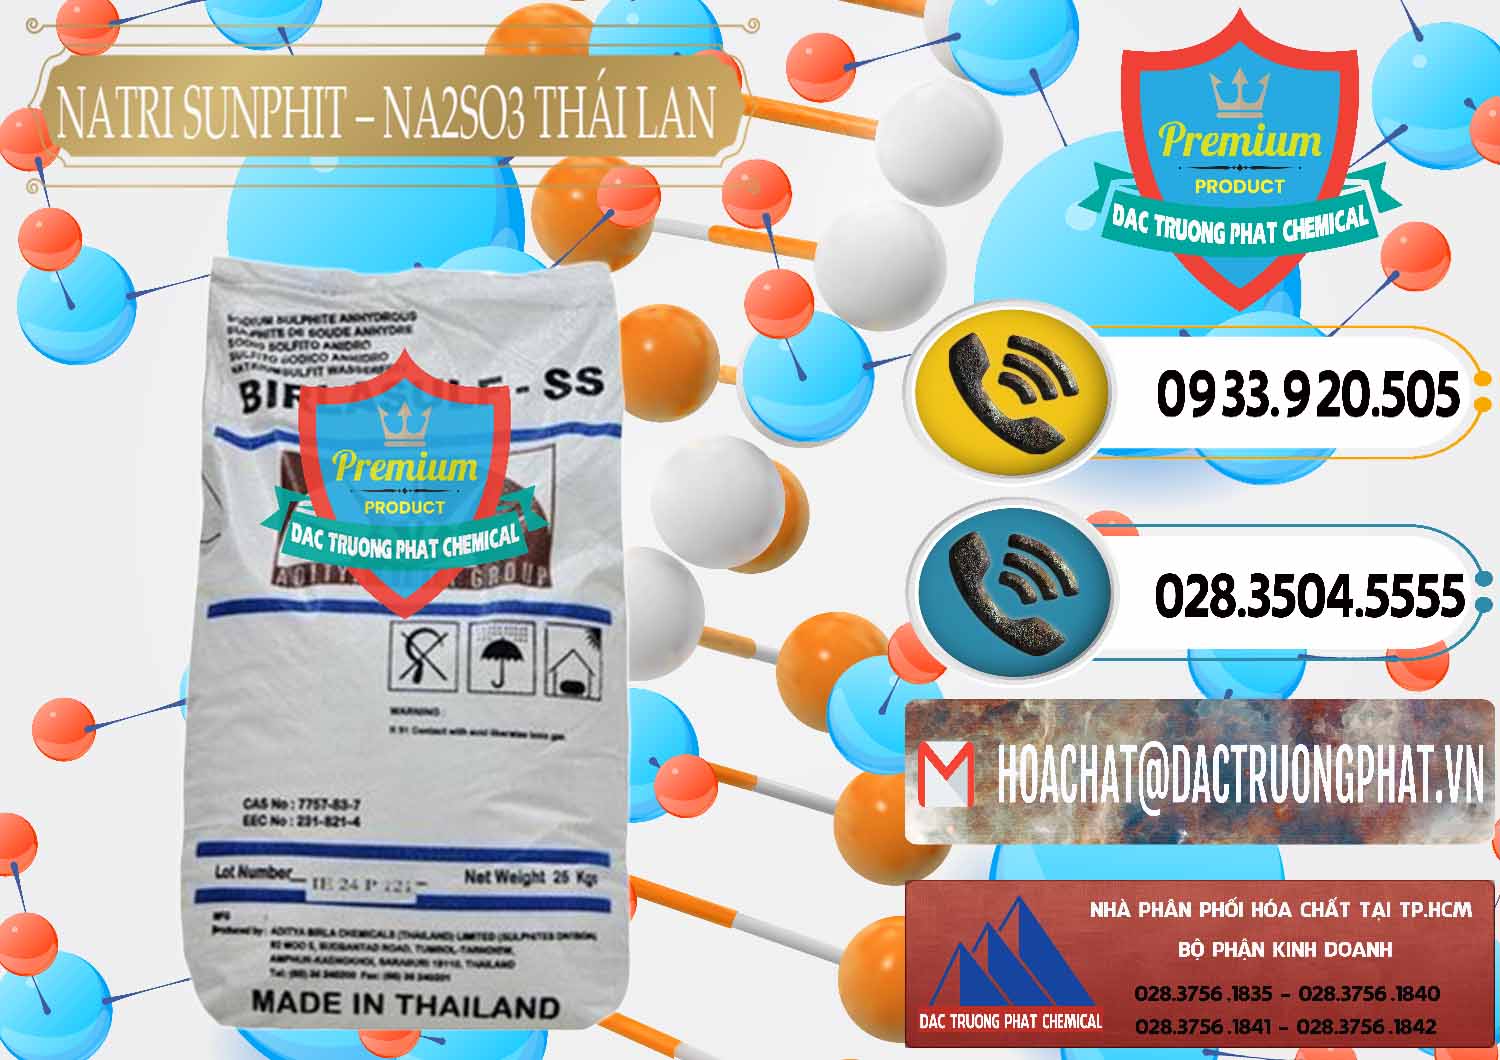 Cty bán - cung ứng Natri Sunphit - NA2SO3 Thái Lan - 0105 - Cty phân phối & kinh doanh hóa chất tại TP.HCM - hoachatdetnhuom.vn